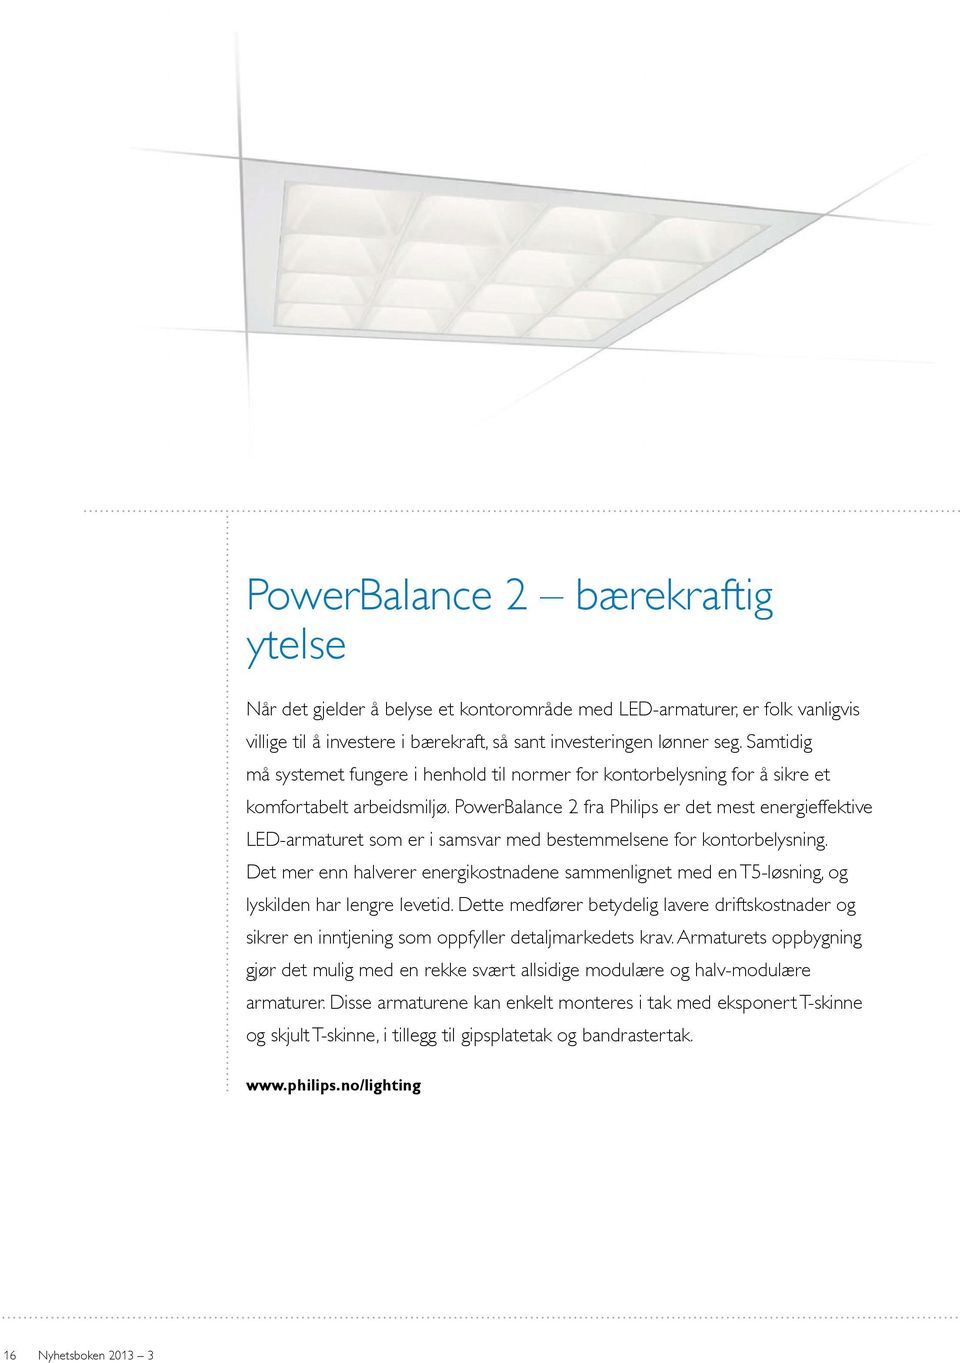 PowerBalance 2 fra Philips er det mest energieffektive LED-armaturet som er i samsvar med bestemmelsene for kontorbelysning.